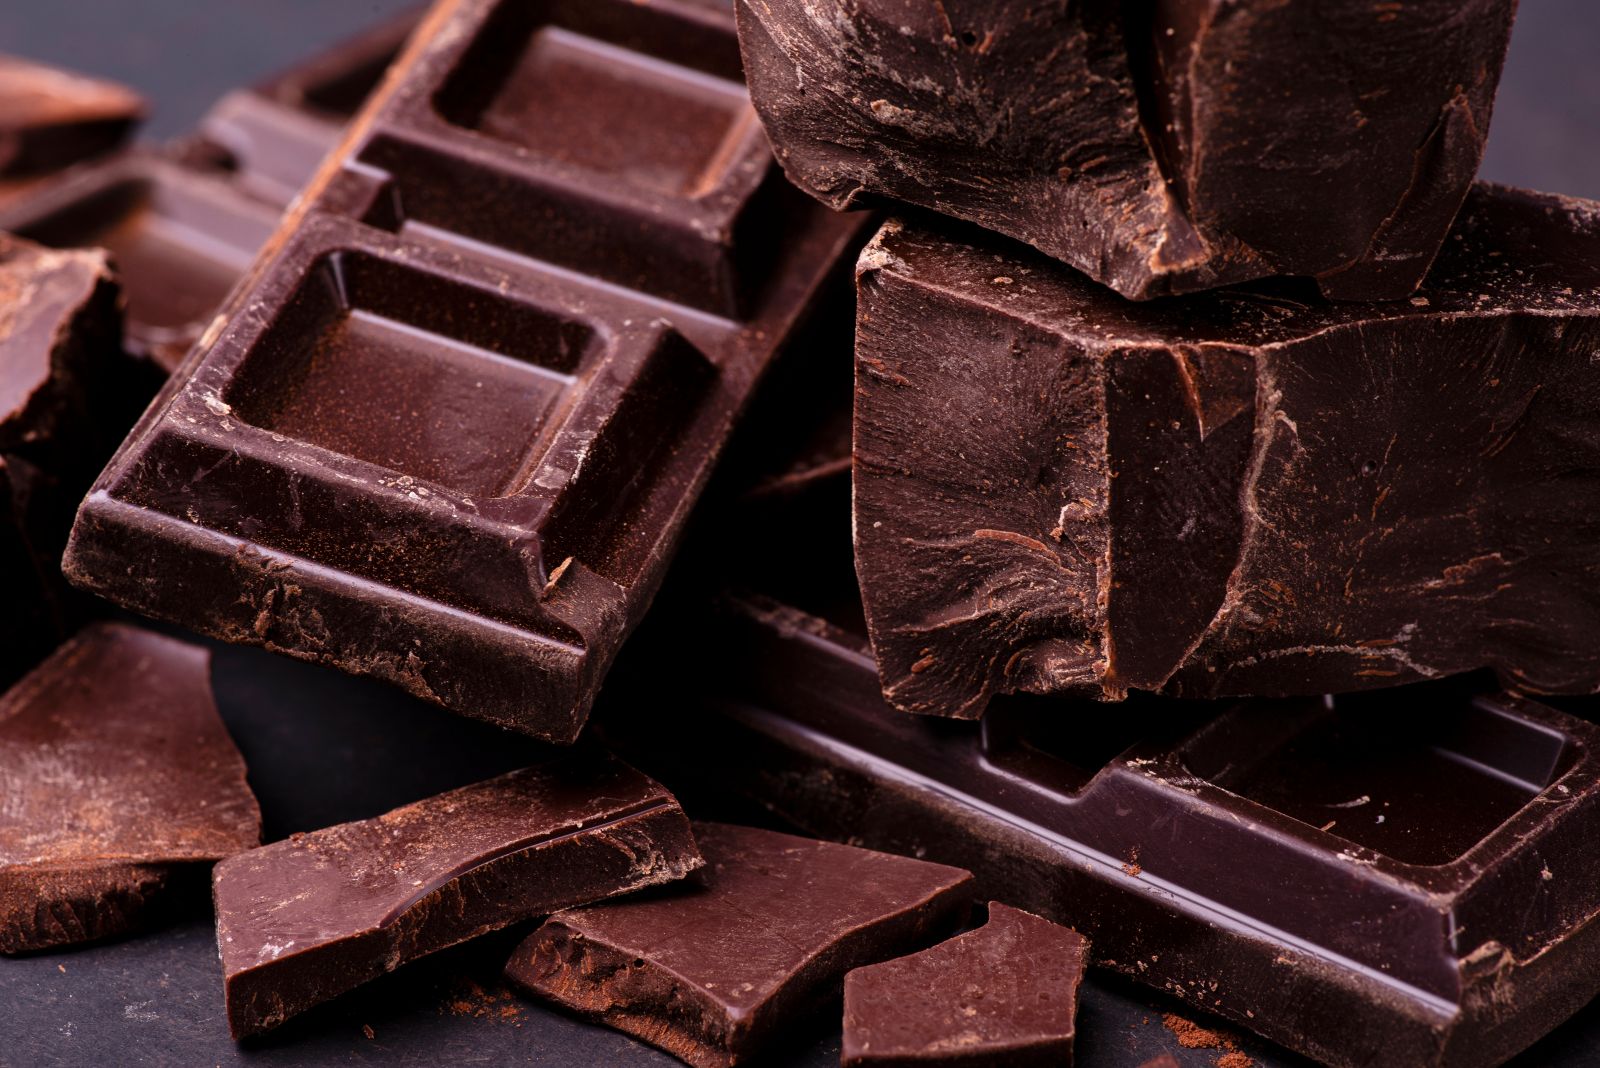 Lehet, hogy mégsem kell lemondanunk kedvenc csokinkról a diétánk miatt?